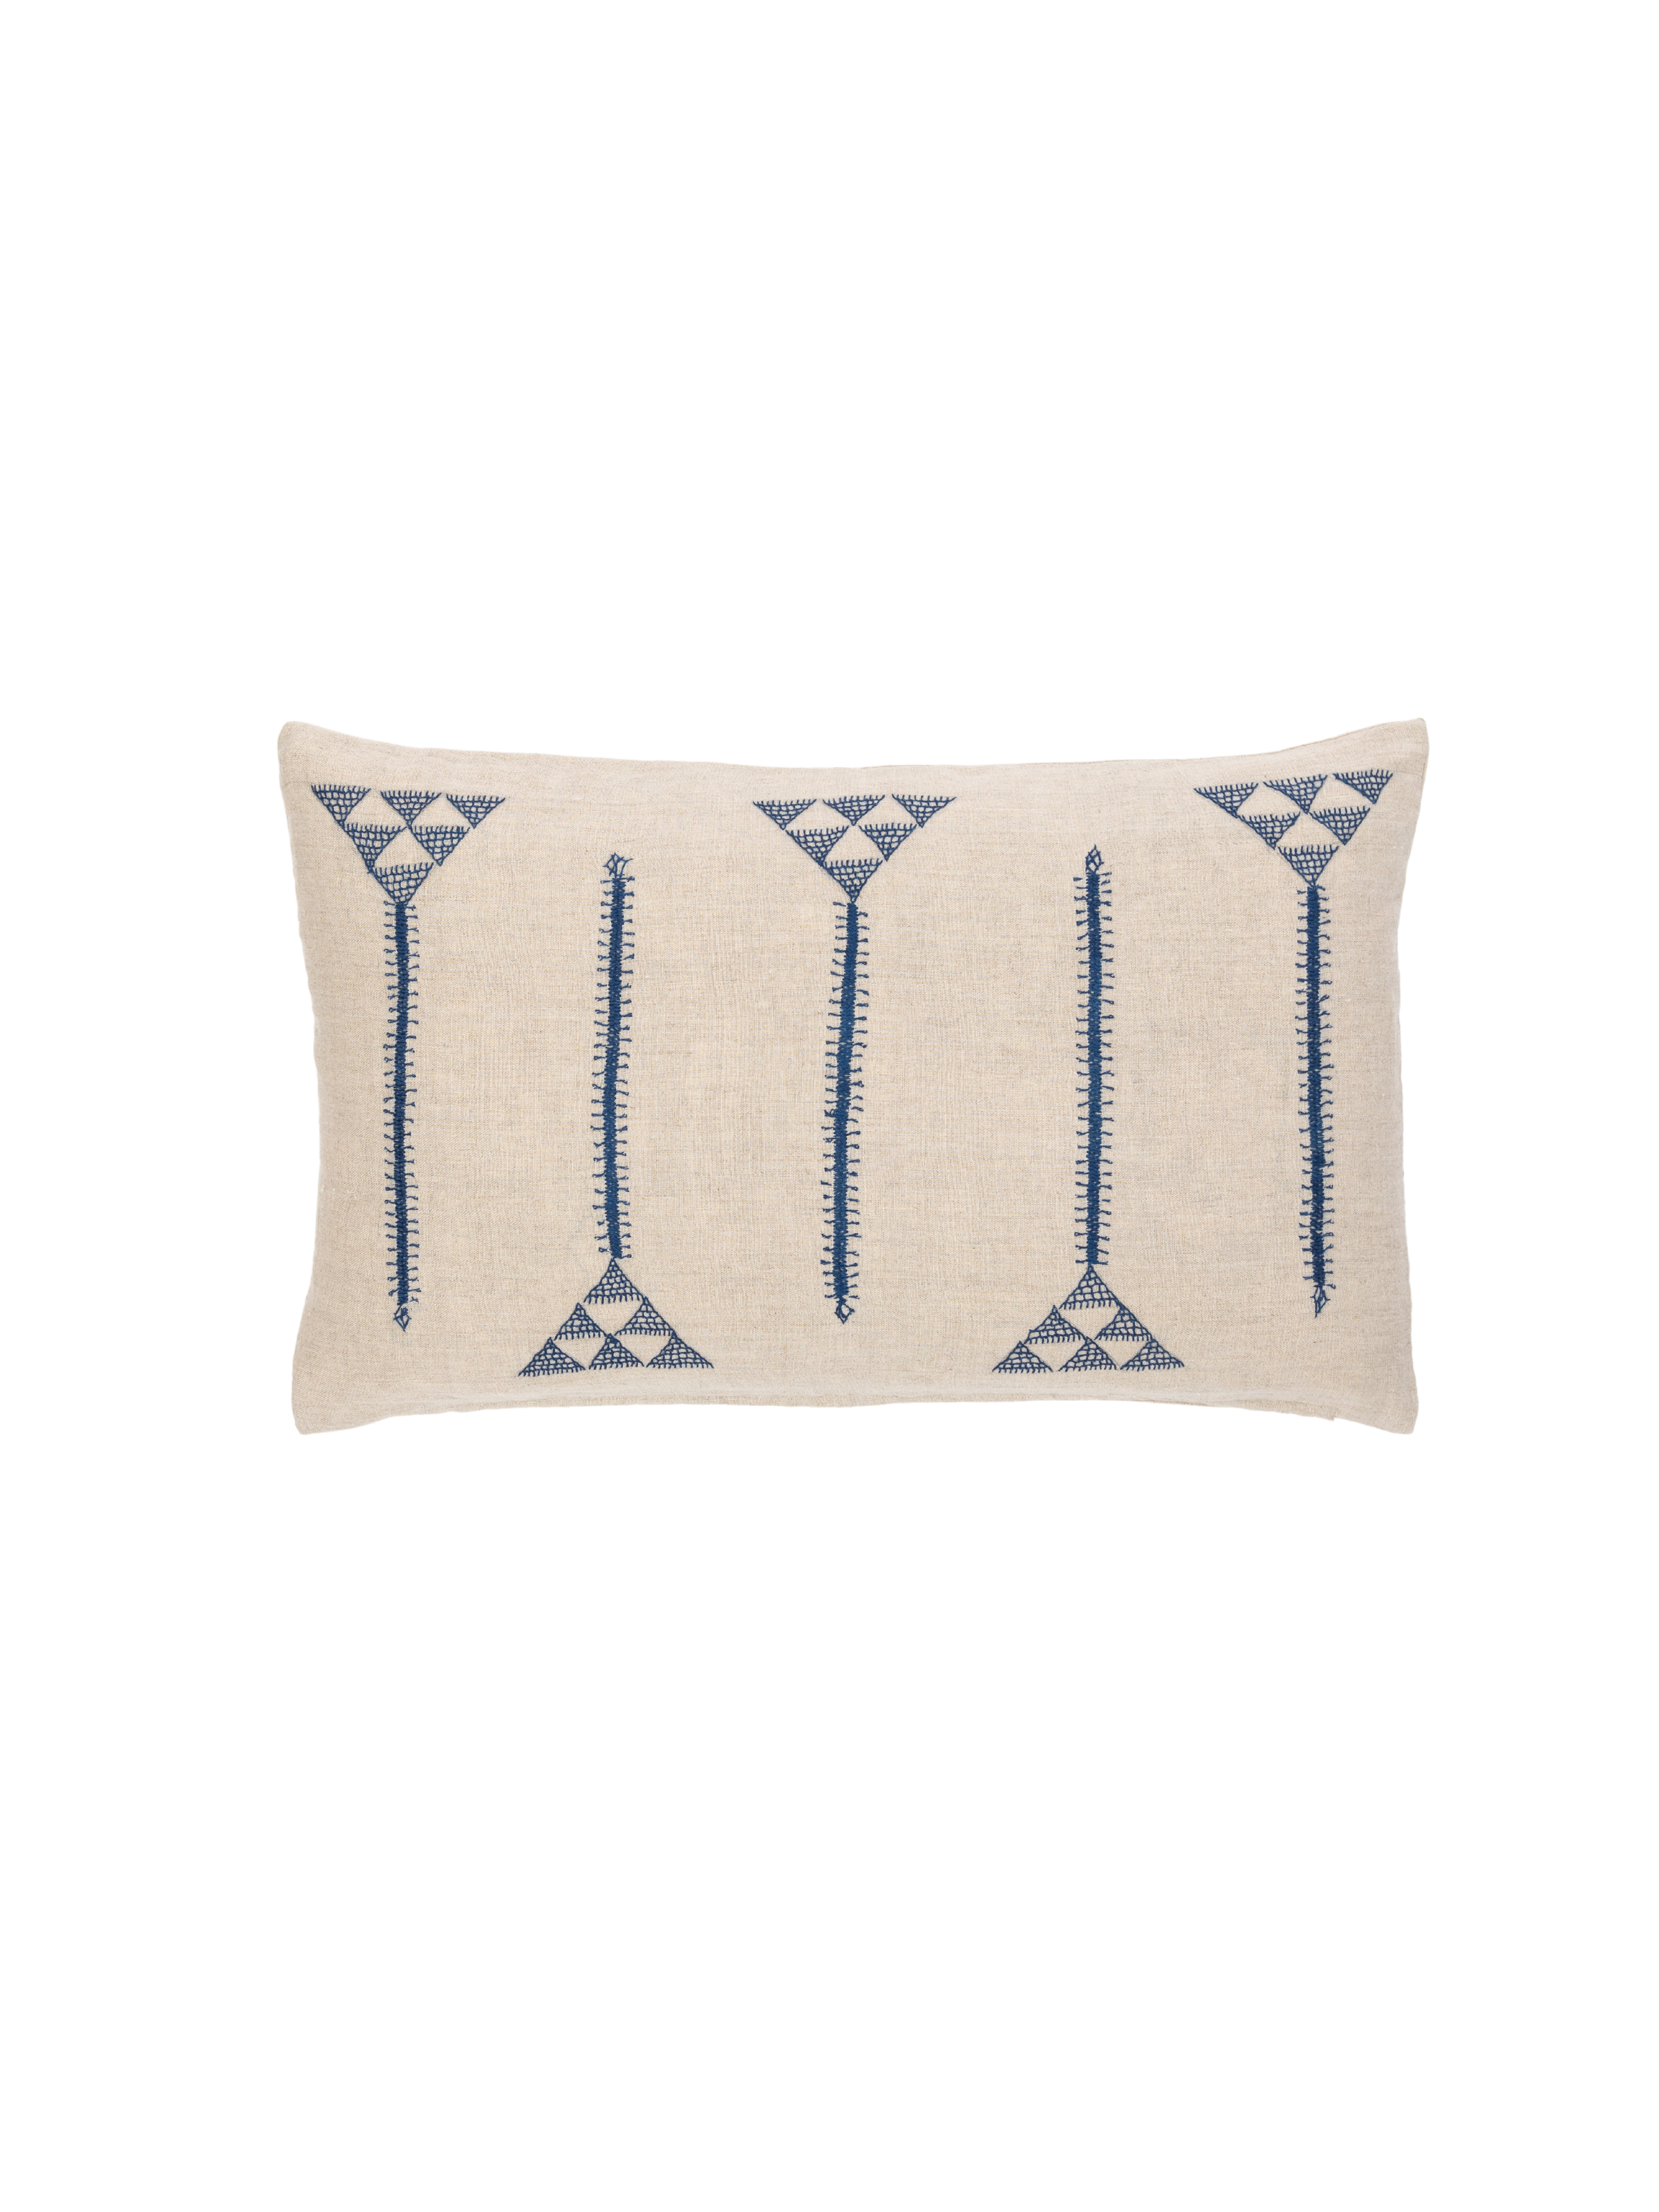 Anguri Lines Indigo Decorative Pillow Cover